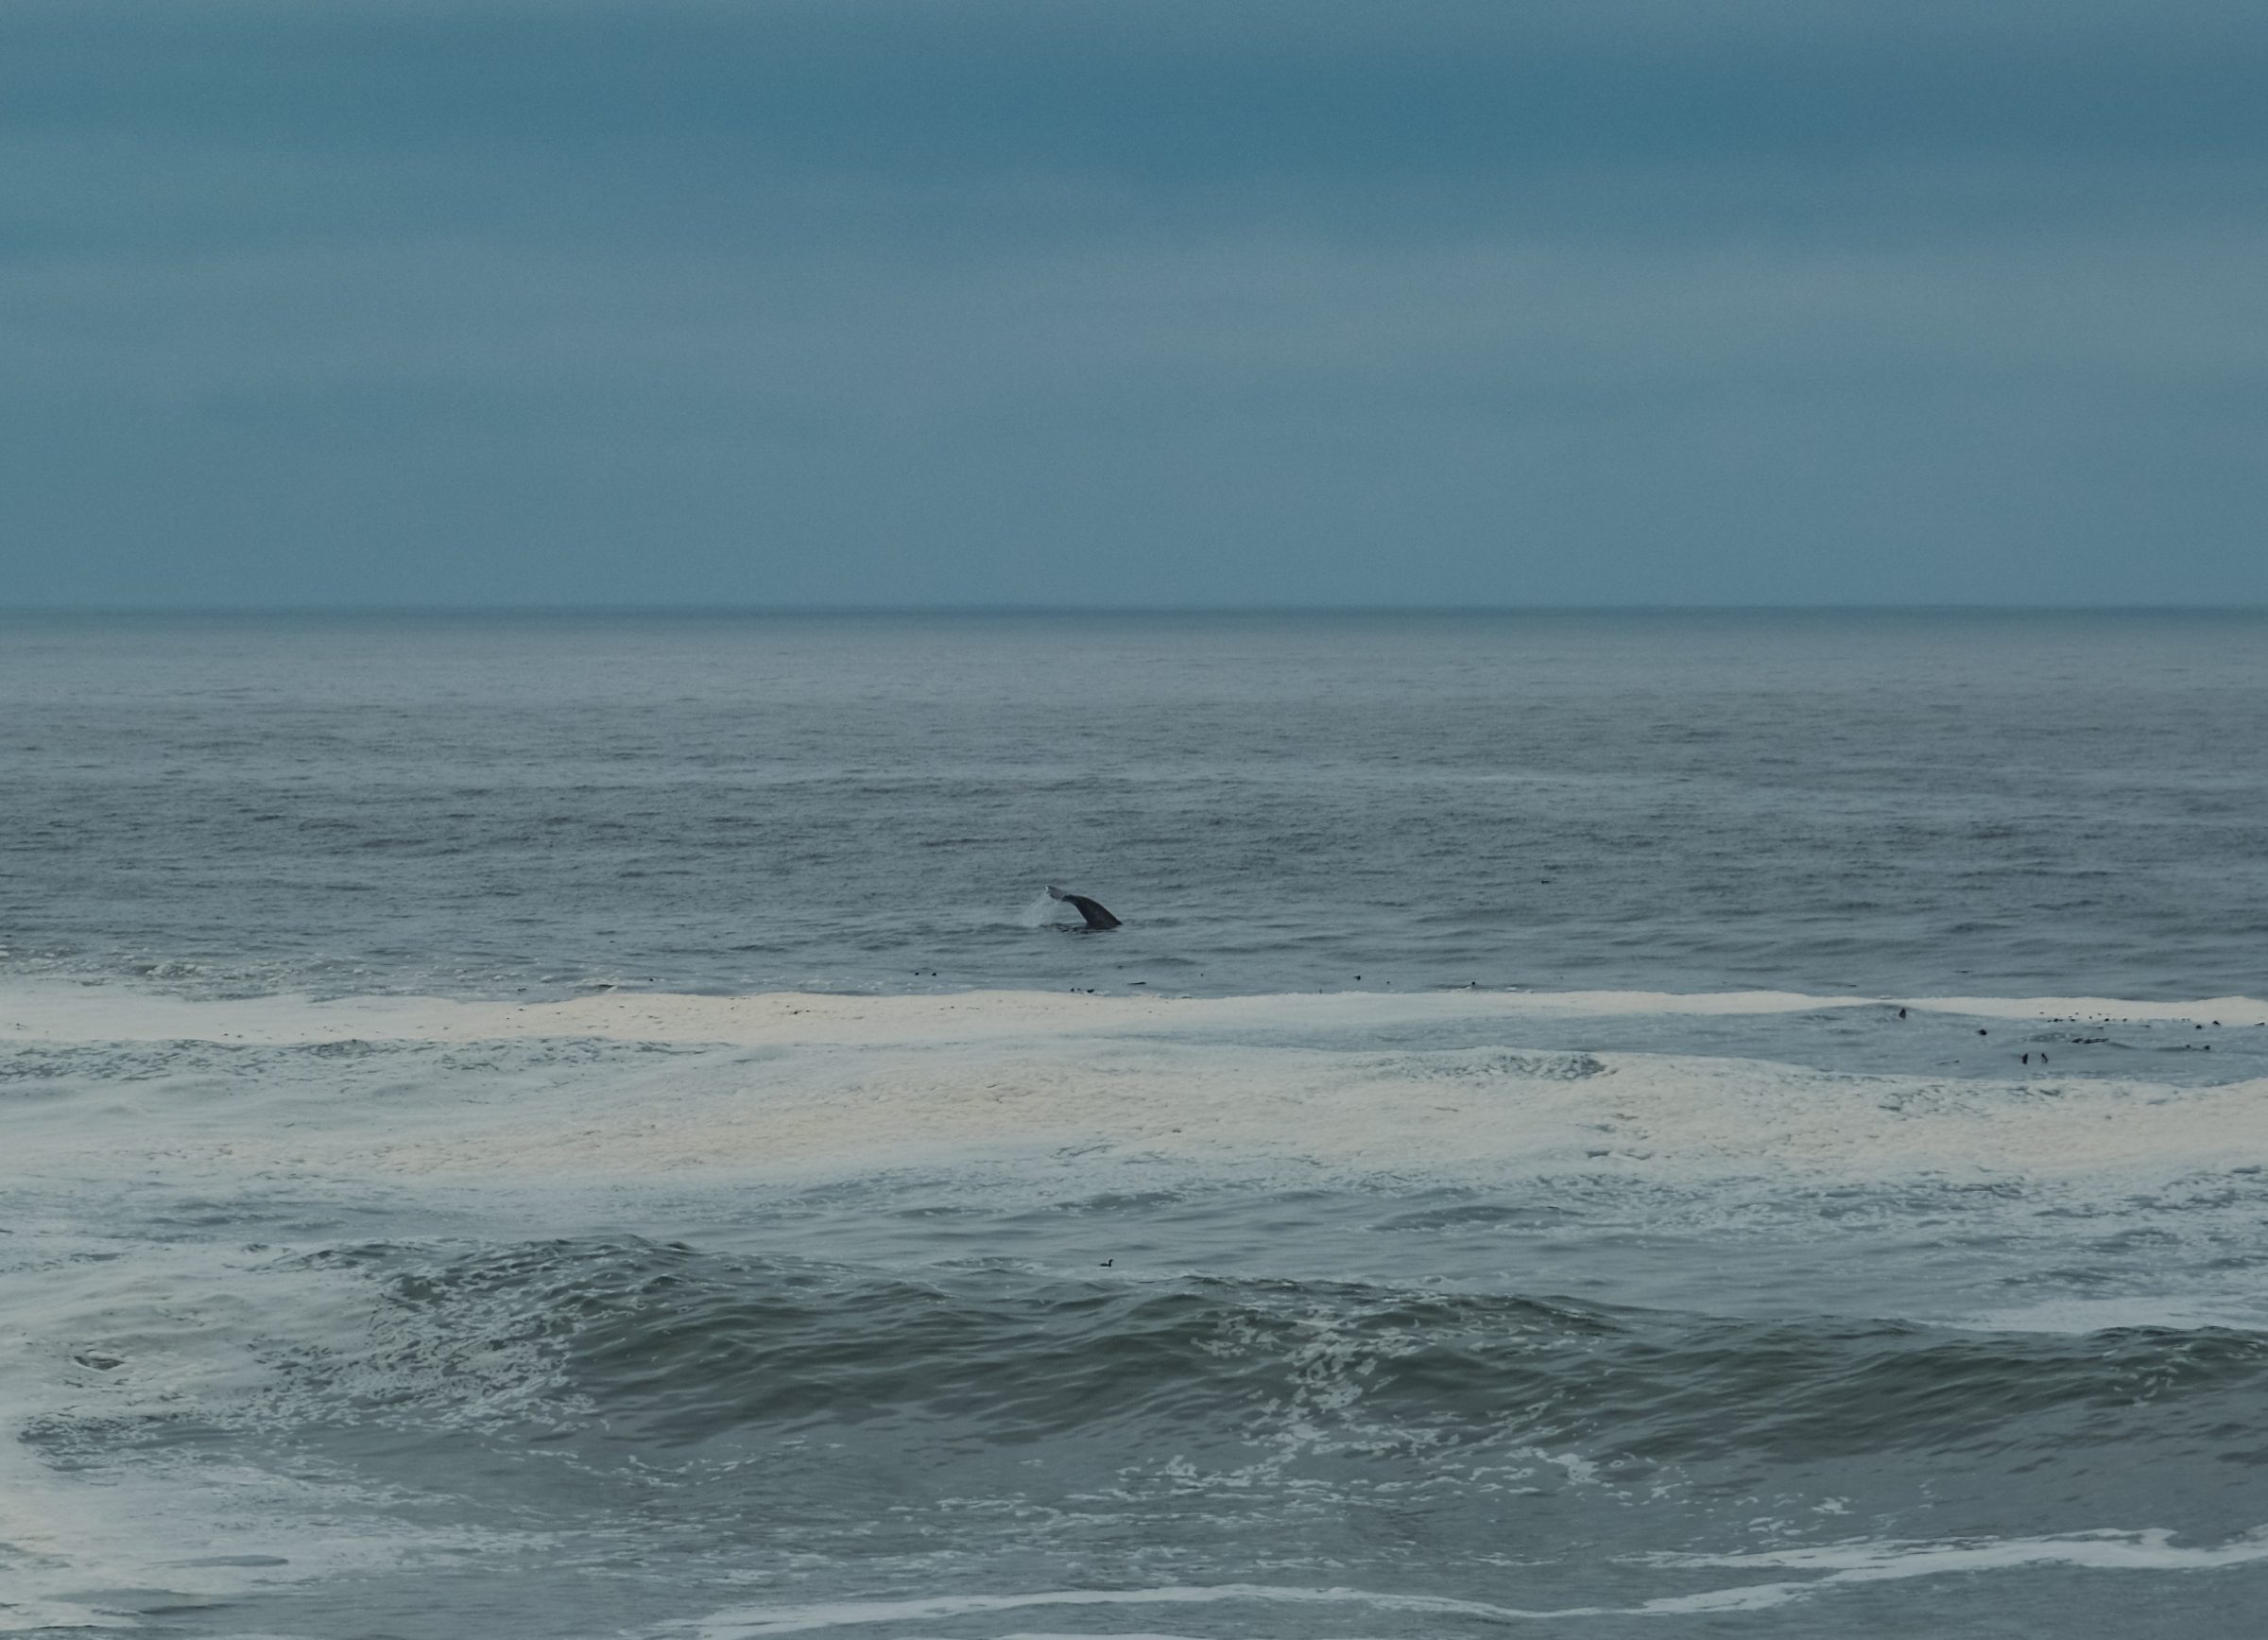 La coda di una balena nello stato di Washington sulla costa occidentale americana